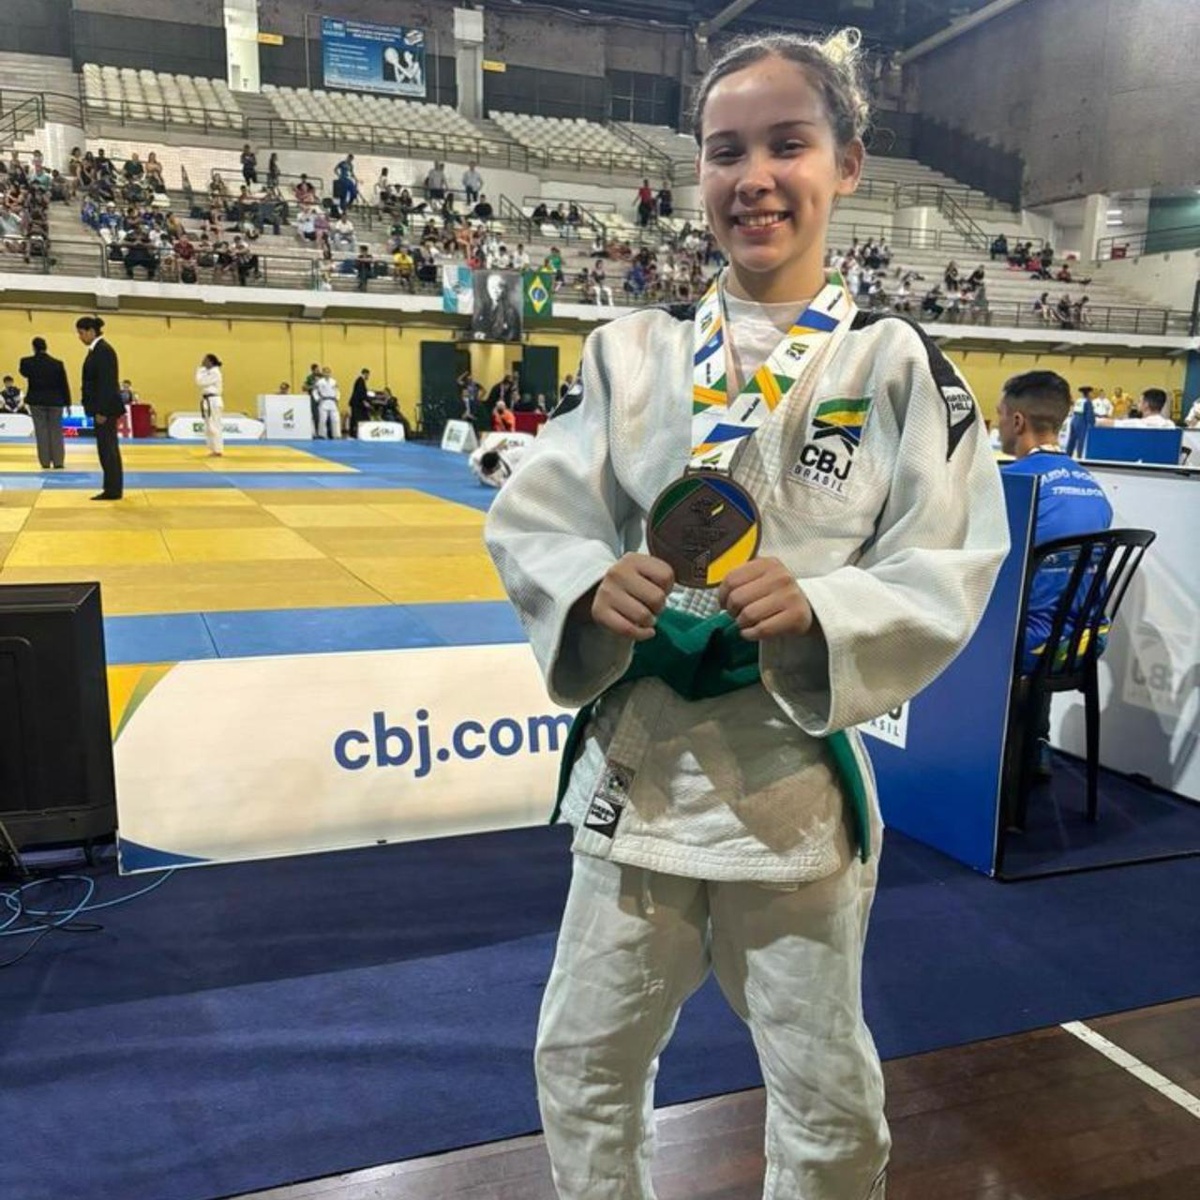 Jeissiara Gomes com a medalha de bronze conquistada.